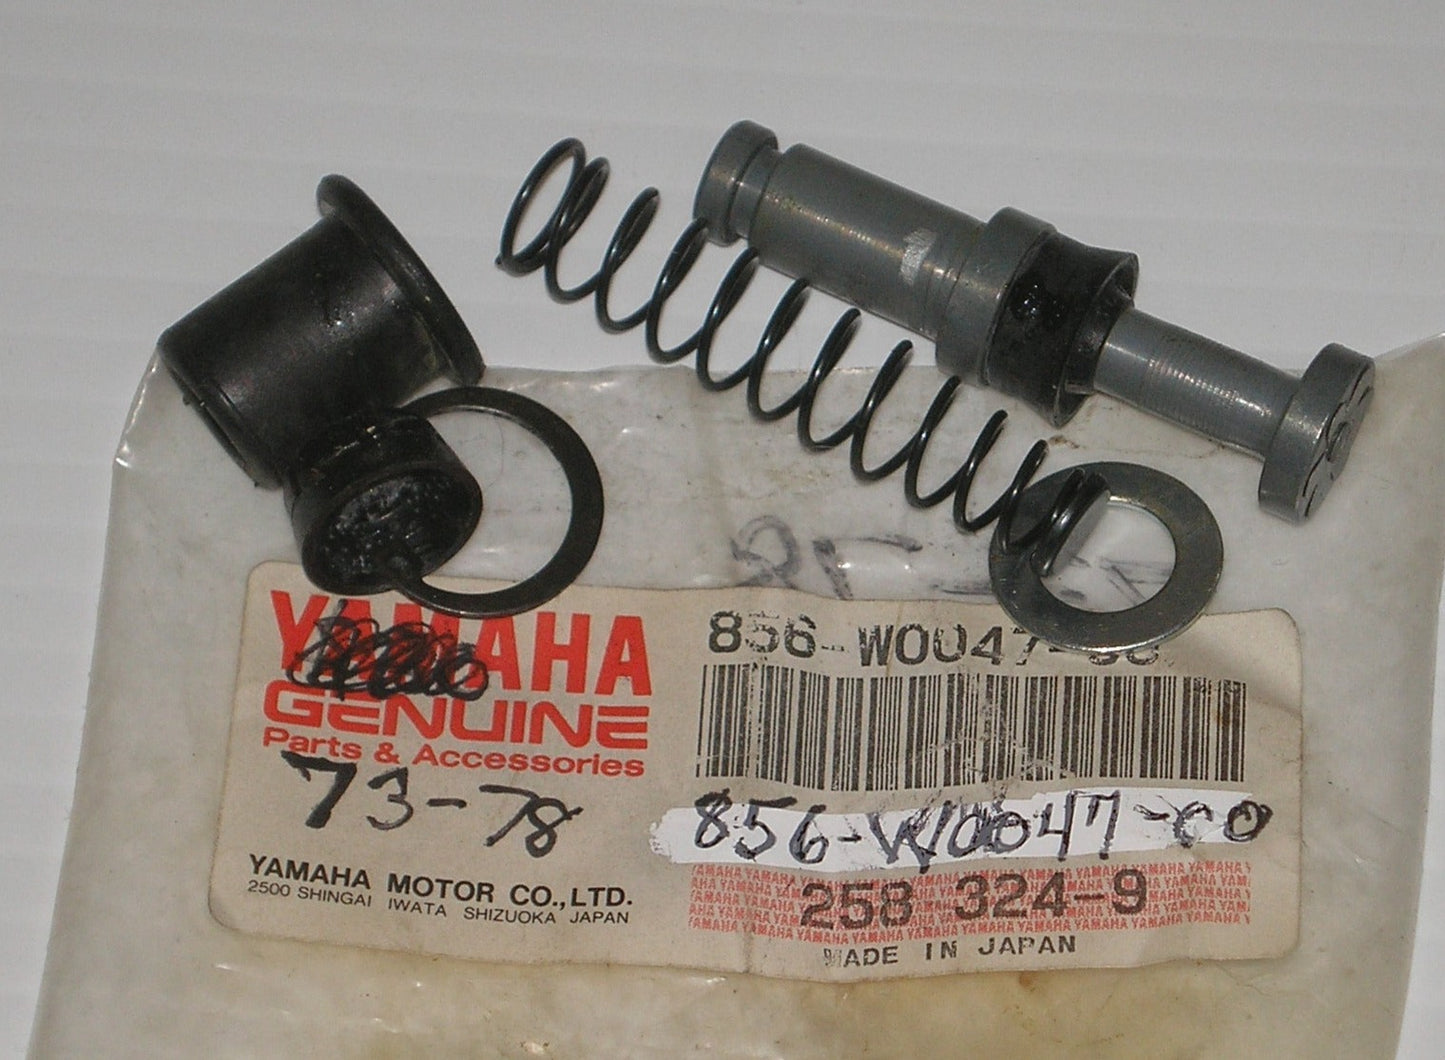 YAMAHA RD SR TX TZ XS  Factory Brake Caliper Repair Seal Kit  856-W0047-00 / 856-20000-50